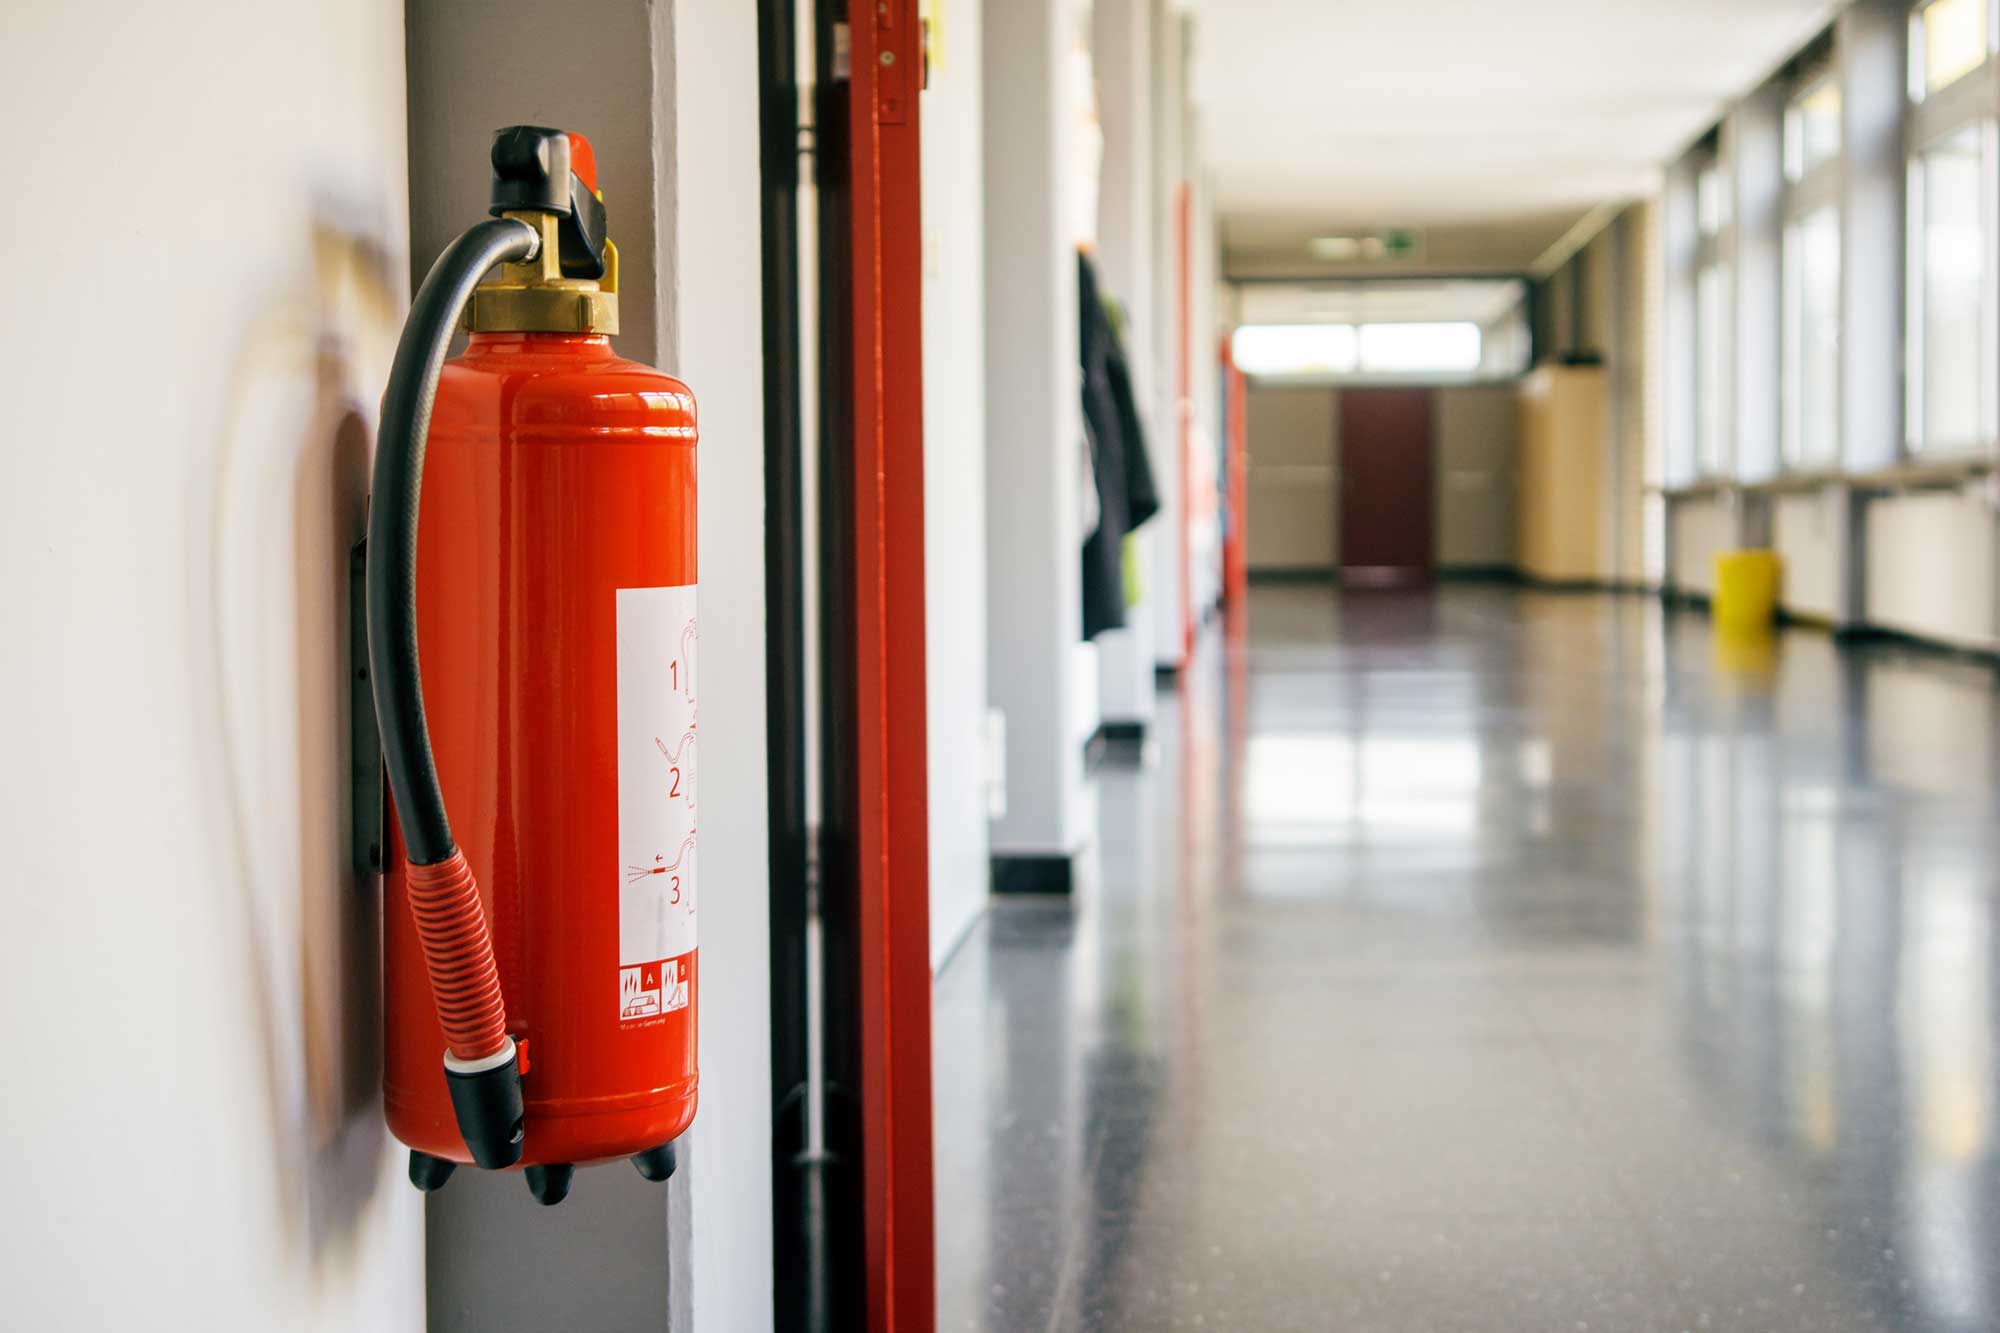 airfeu seguridad contra incendios establecimientos industriales planteamiento prescriptivo prestacional